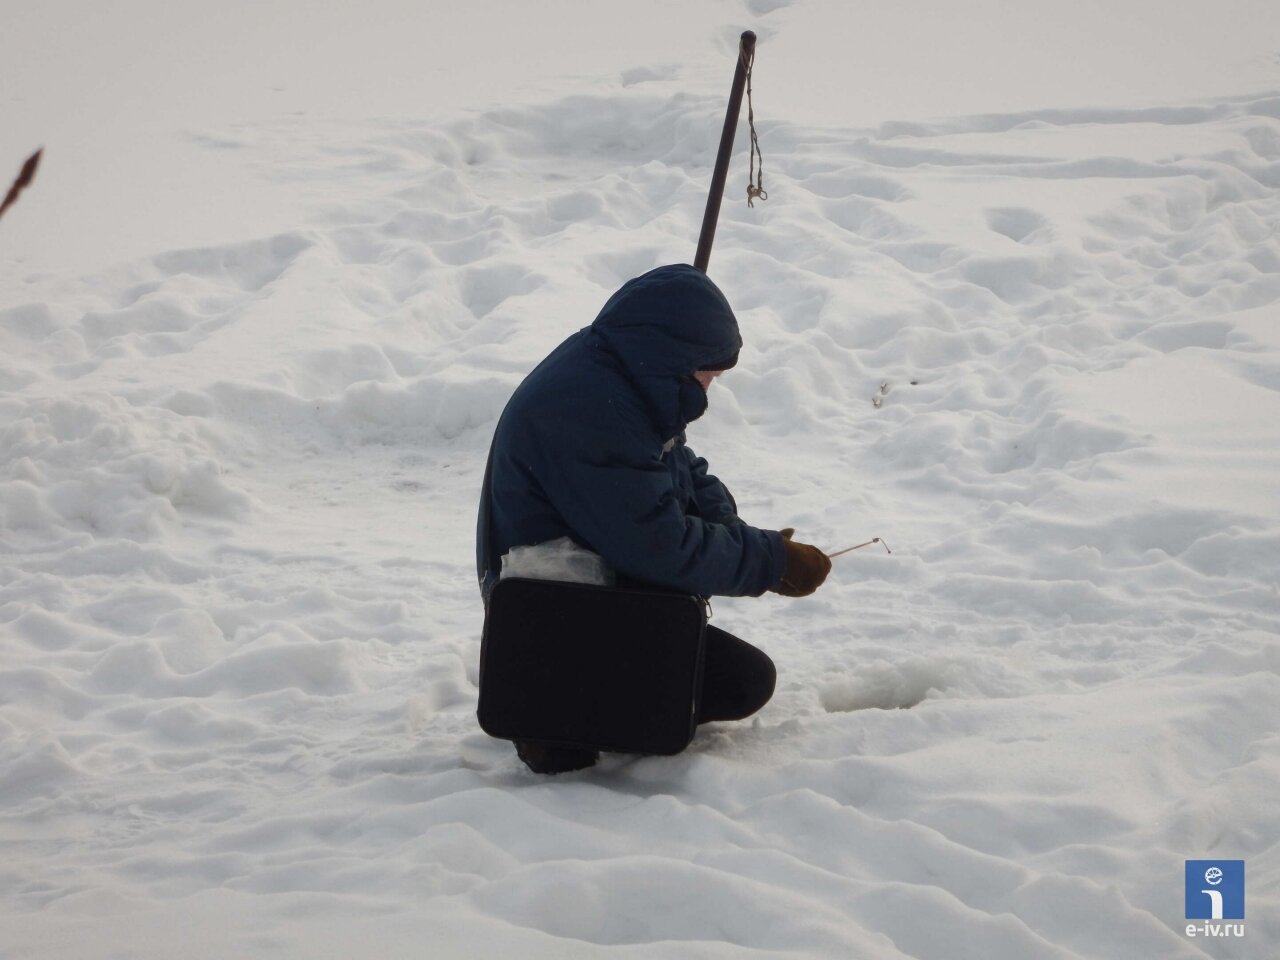 Мужчина ловит рыбу в реке Уча, зимняя рыбалка, Ивантеевка, Московская область